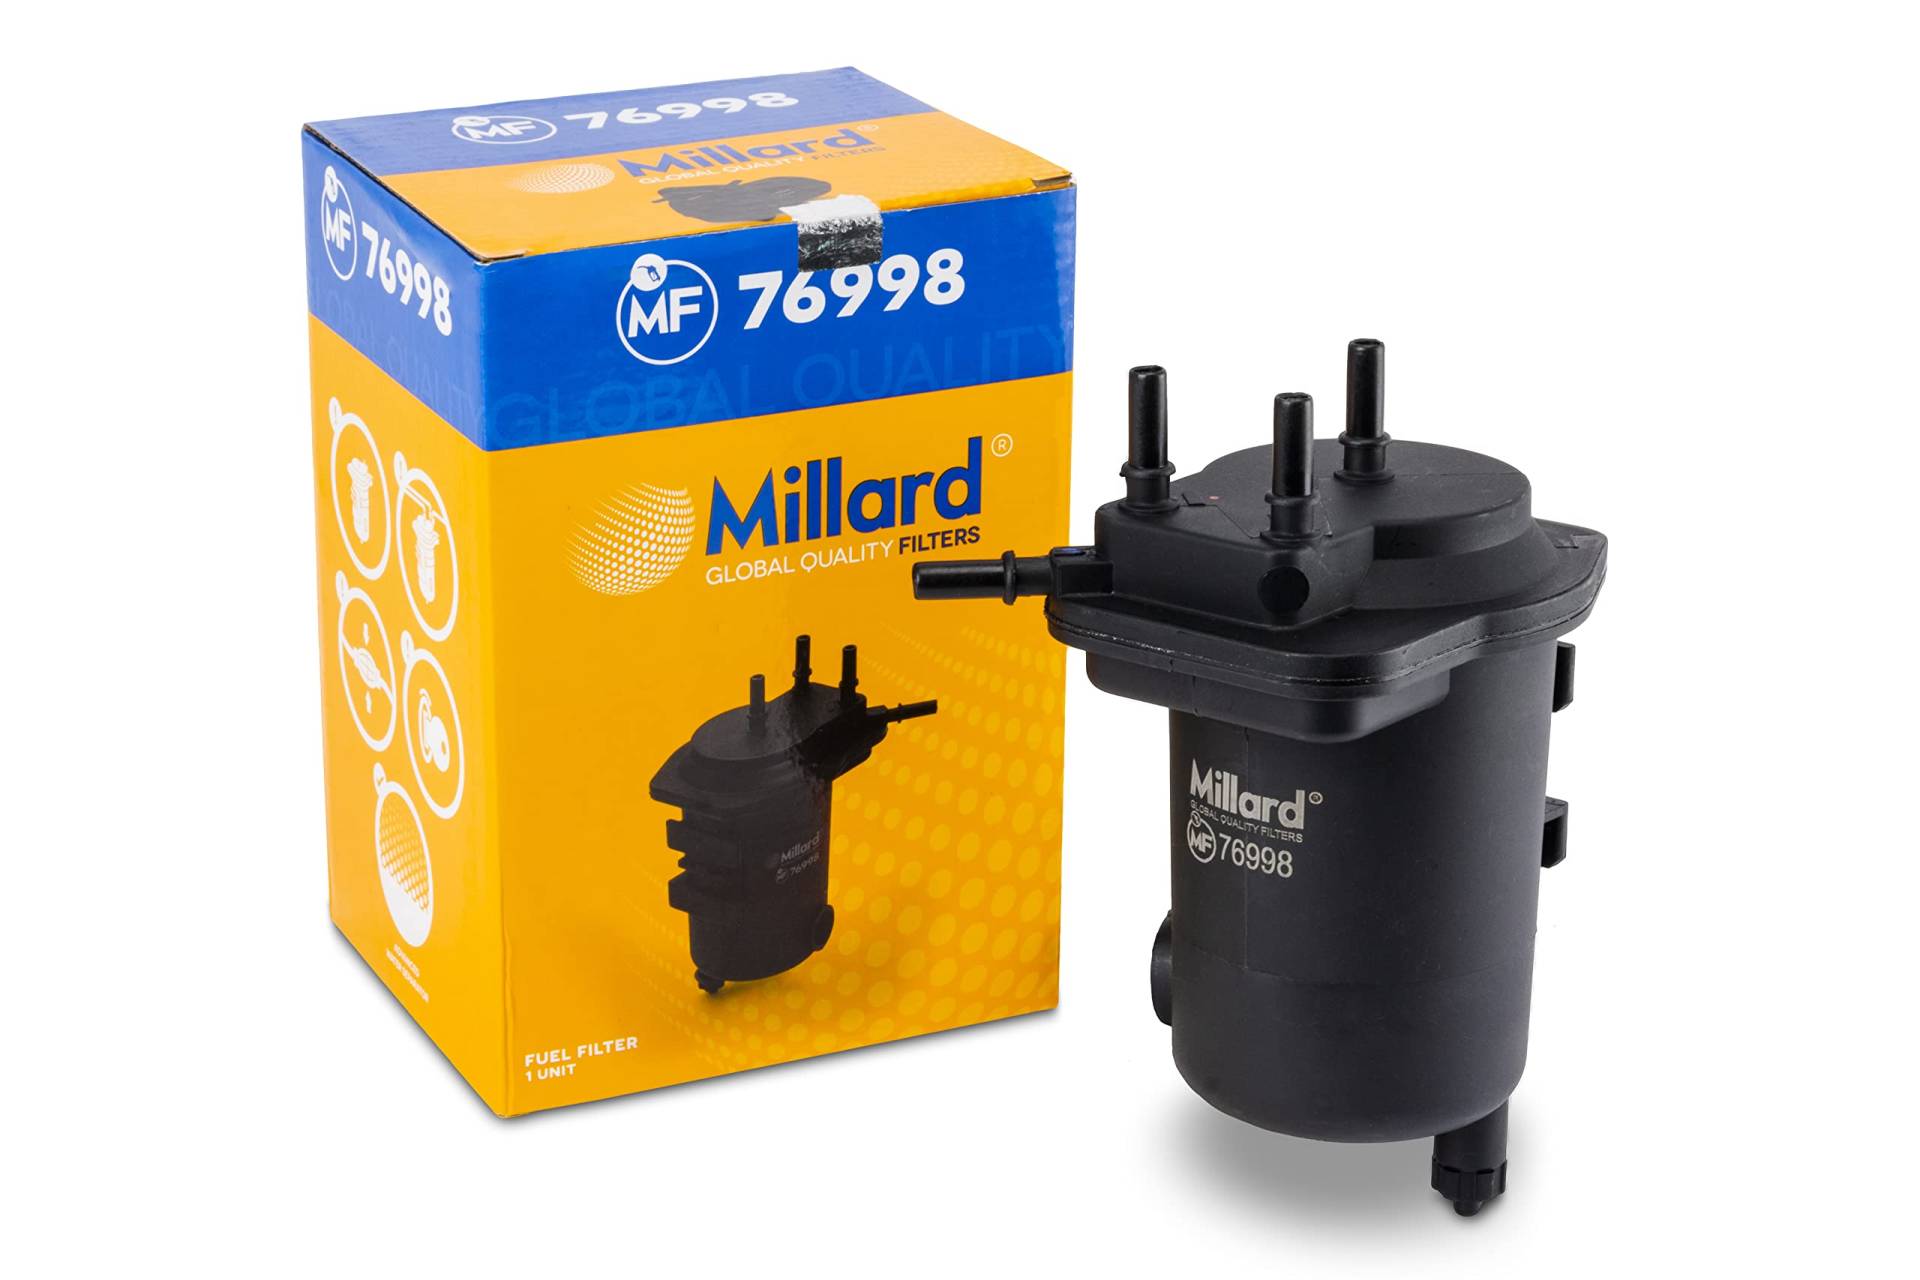 Millard Filters Auto-Kraftstofffilter Millard MF76998 192x107x130x8x8 mm Global Quality von Millard Filters